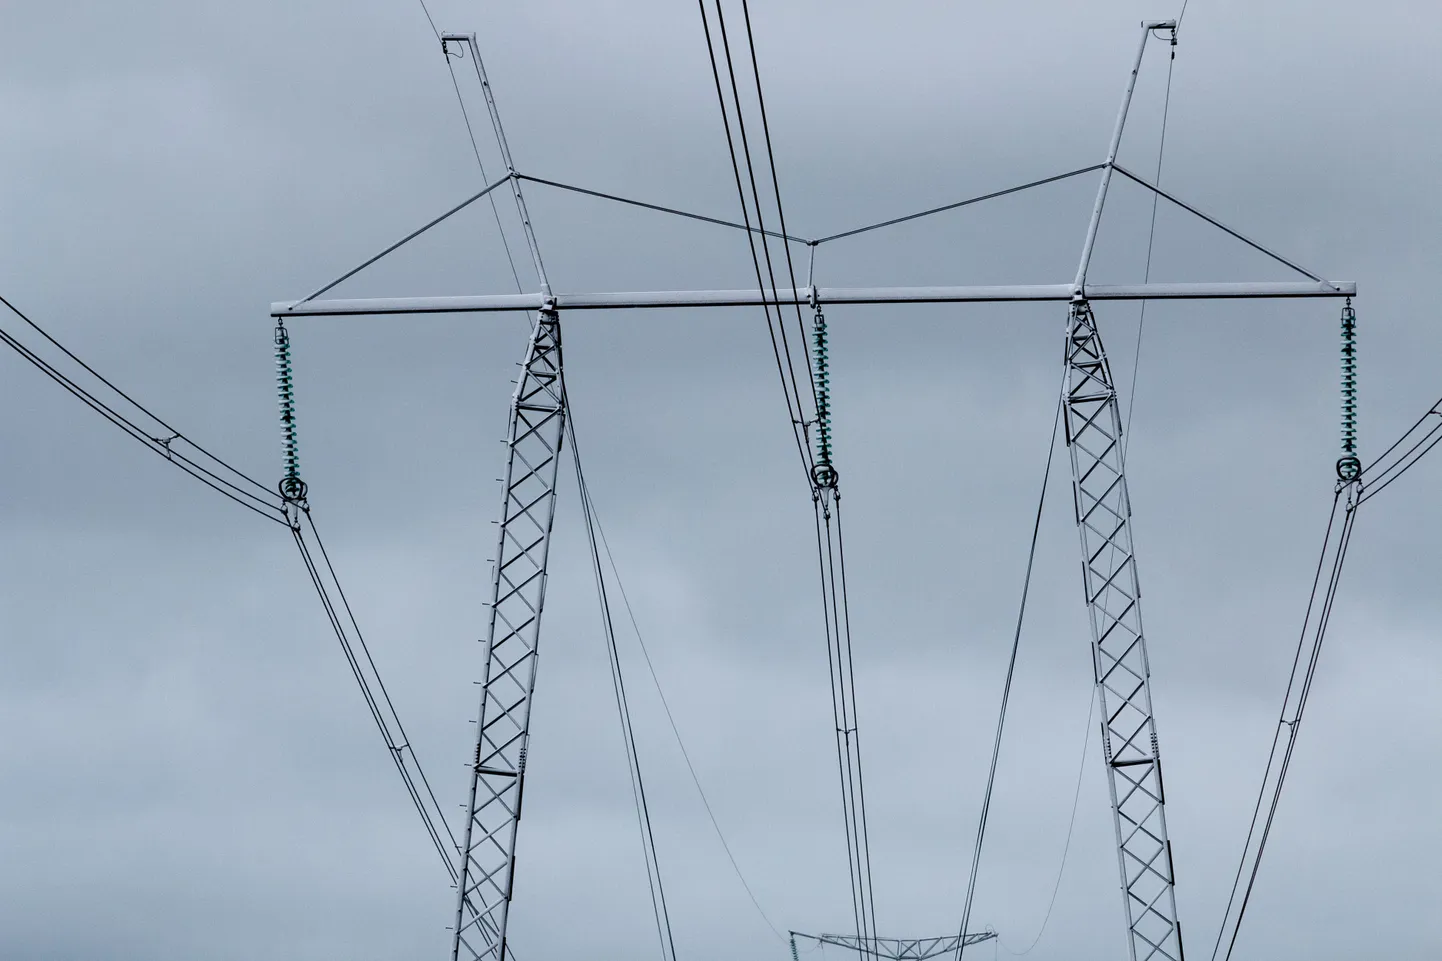 Pressiteade: Konkurentsiamet algatas seoses Saaremaal toimunud ulatusliku elektrikatkestusega järelevalvemenetluse.